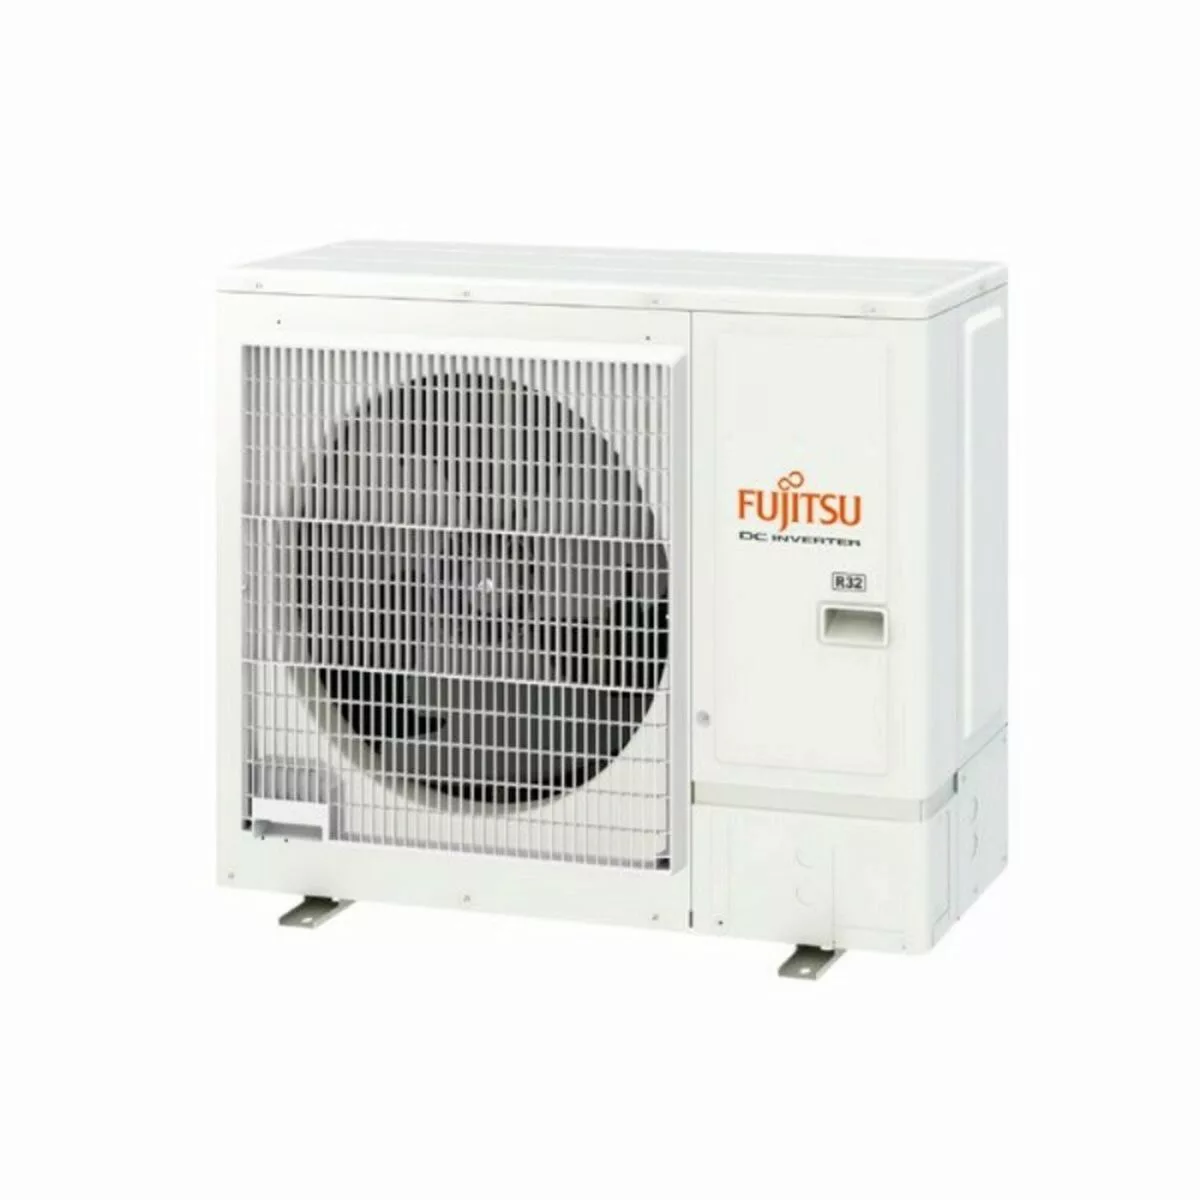 Klimaanlage-schacht Fujitsu Acy125kka 11608 Kcal/h R32 A+/a günstig online kaufen